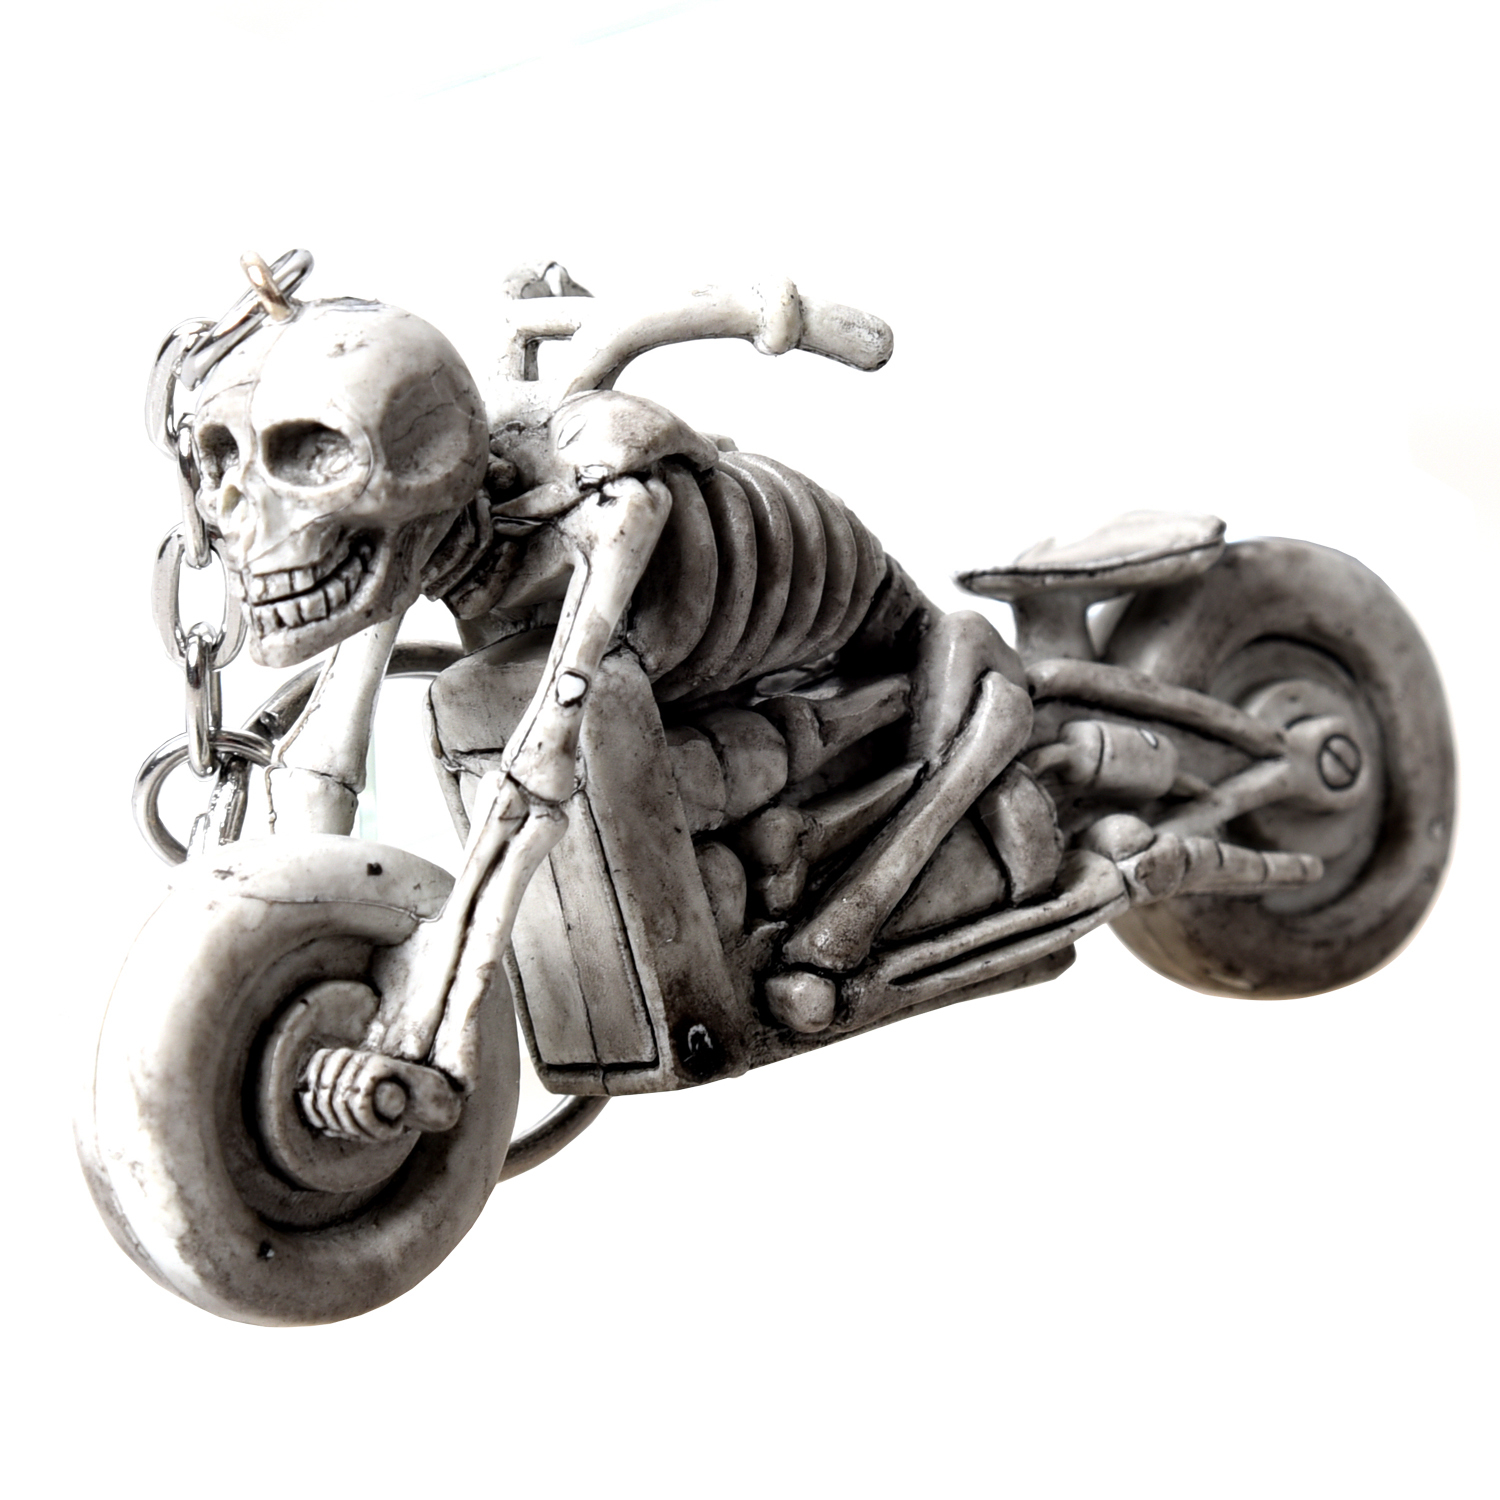 Скелет на мотоцикле